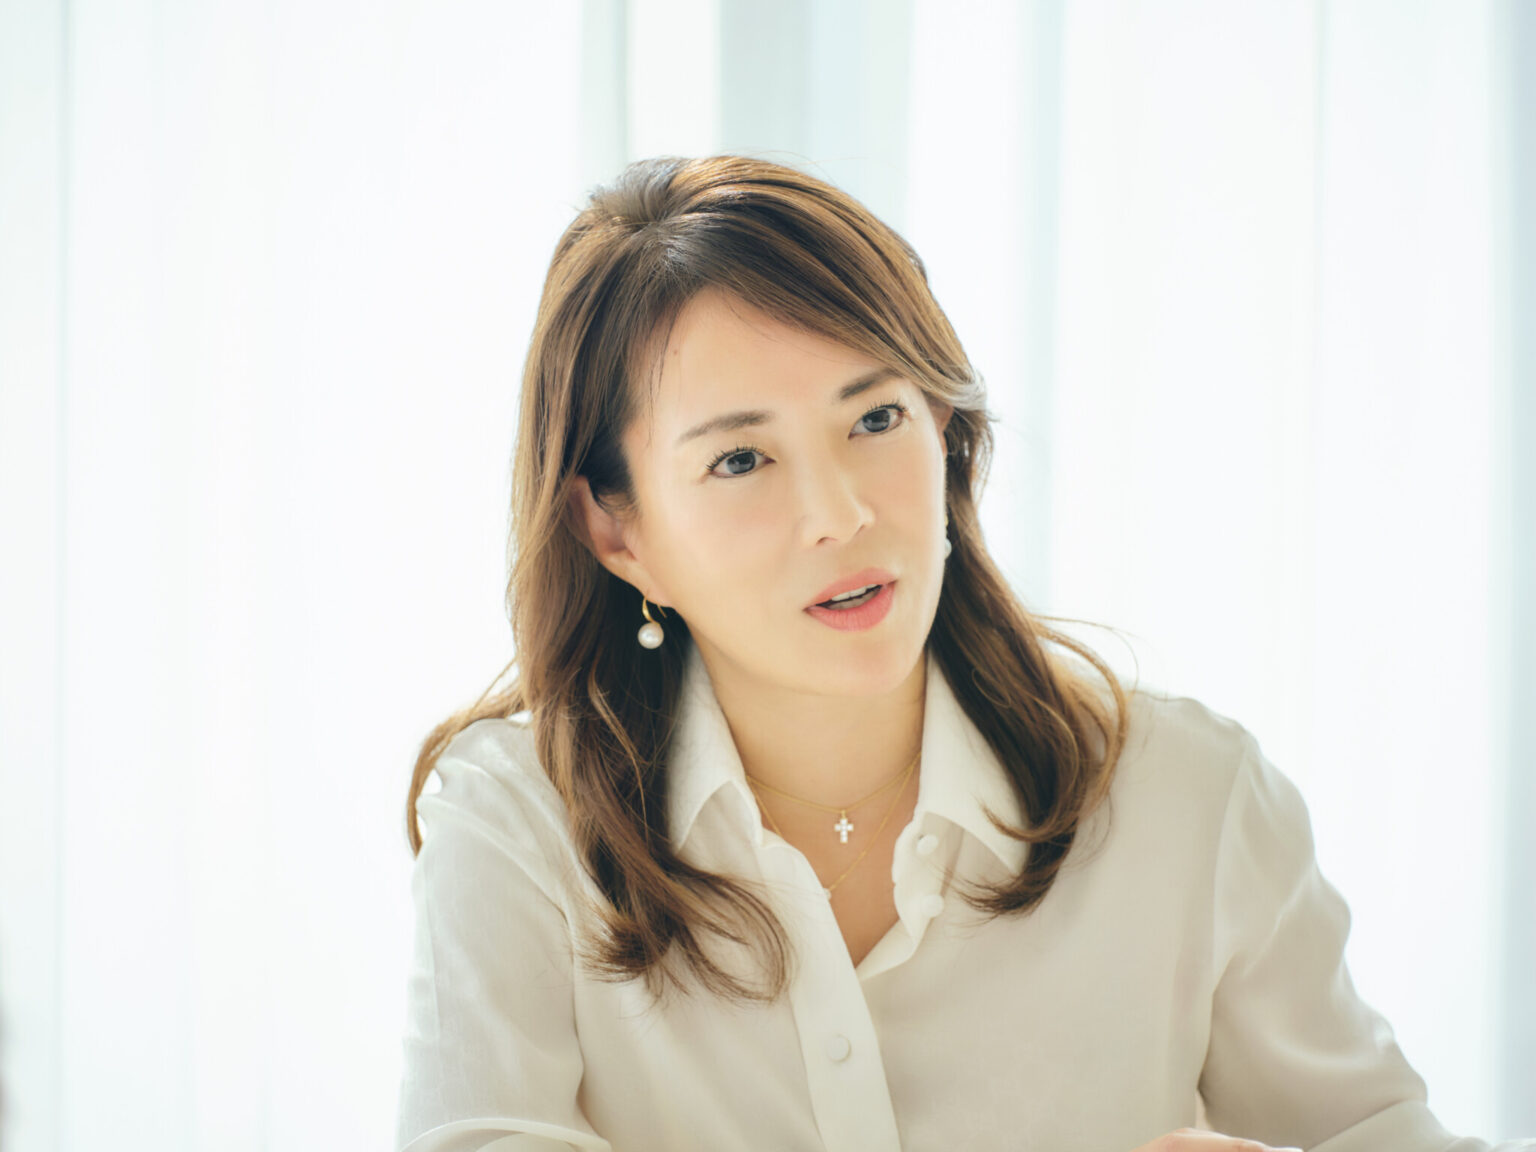 次のキャリアを考えた時、どのような準備や心構えをしたらいいのか。会社員から一転、日本最大級のオンラインサロンオーナーになった河村真木子さんにインタビュー。